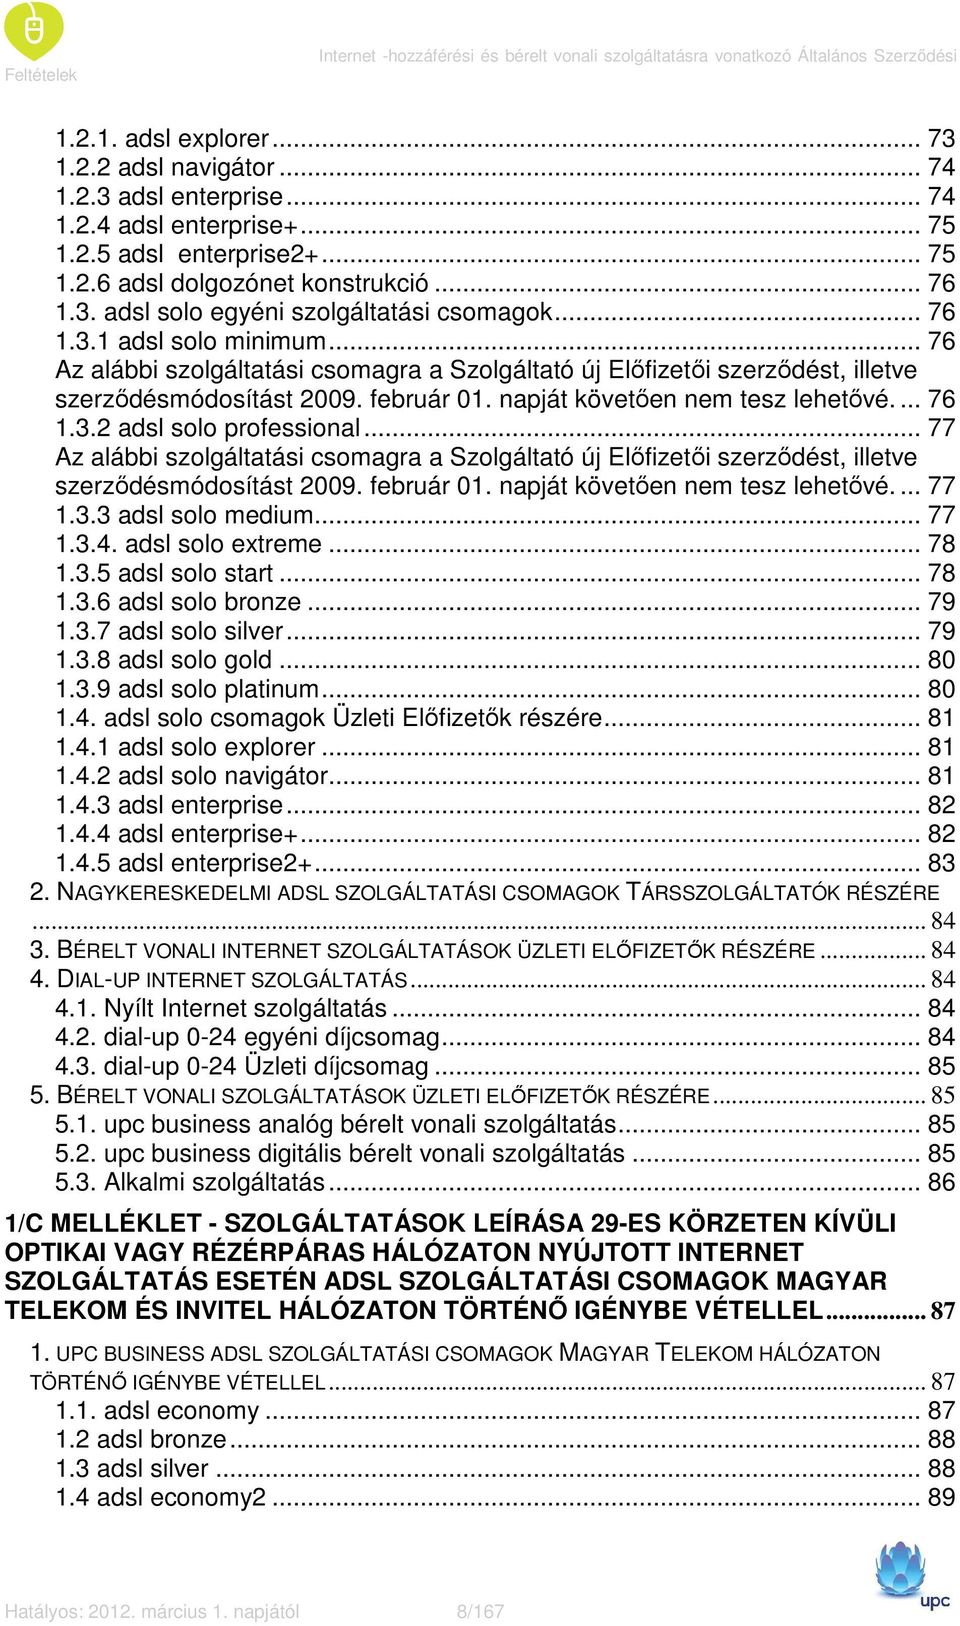 .. 76 Az alábbi szolgáltatási csomagra a Szolgáltató új Elıfizetıi szerzıdést, illetve szerzıdésmódosítást 2009. február 01. napját követıen nem tesz lehetıvé.... 76 1.3.2 adsl solo professional.